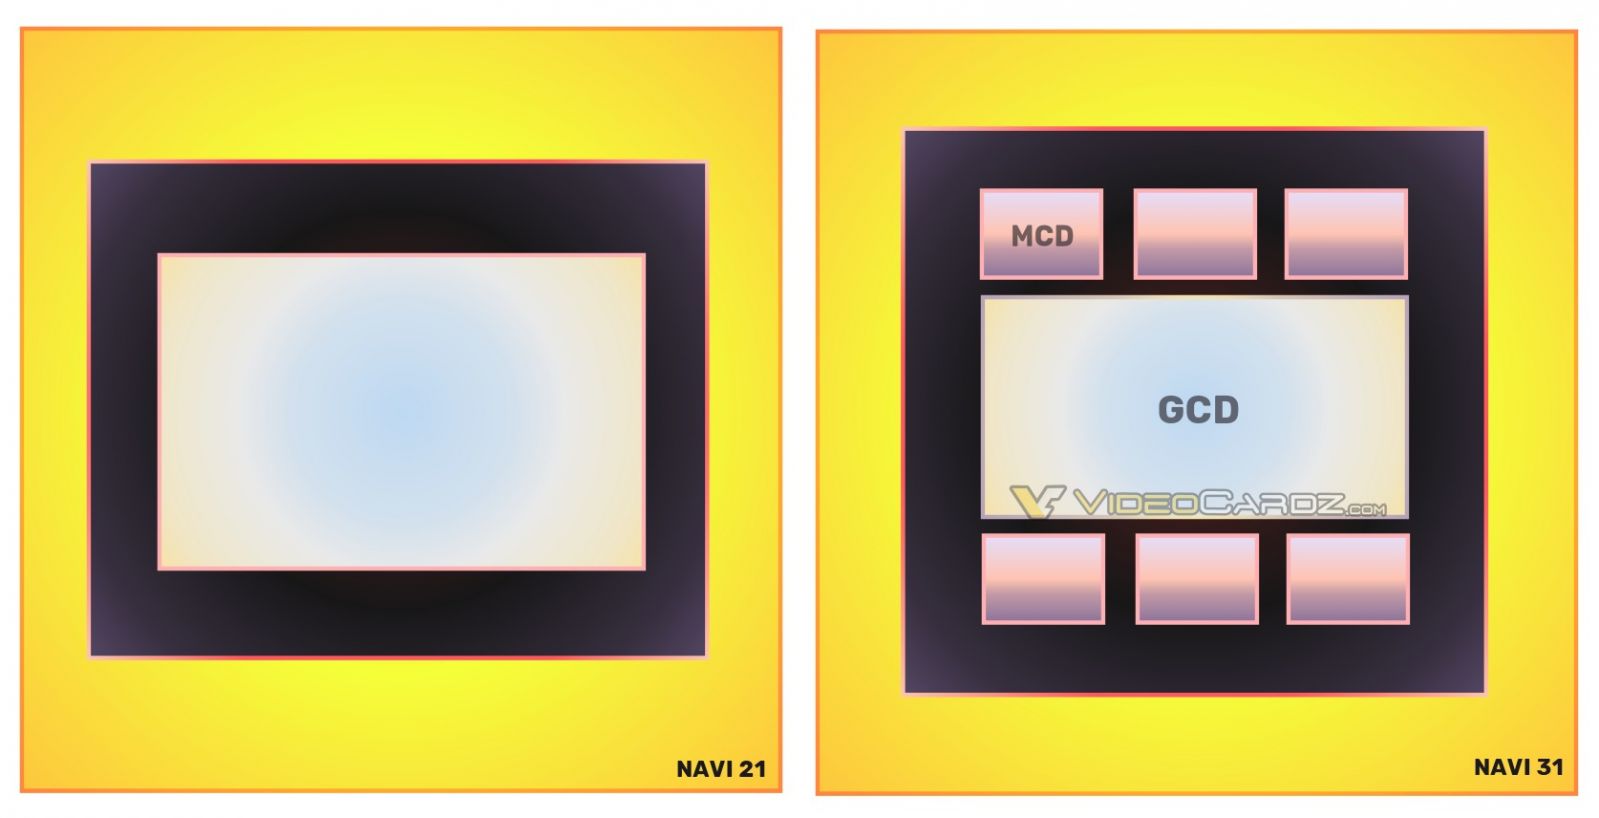 AMD-Navi-31-MCD-GCD.jpg